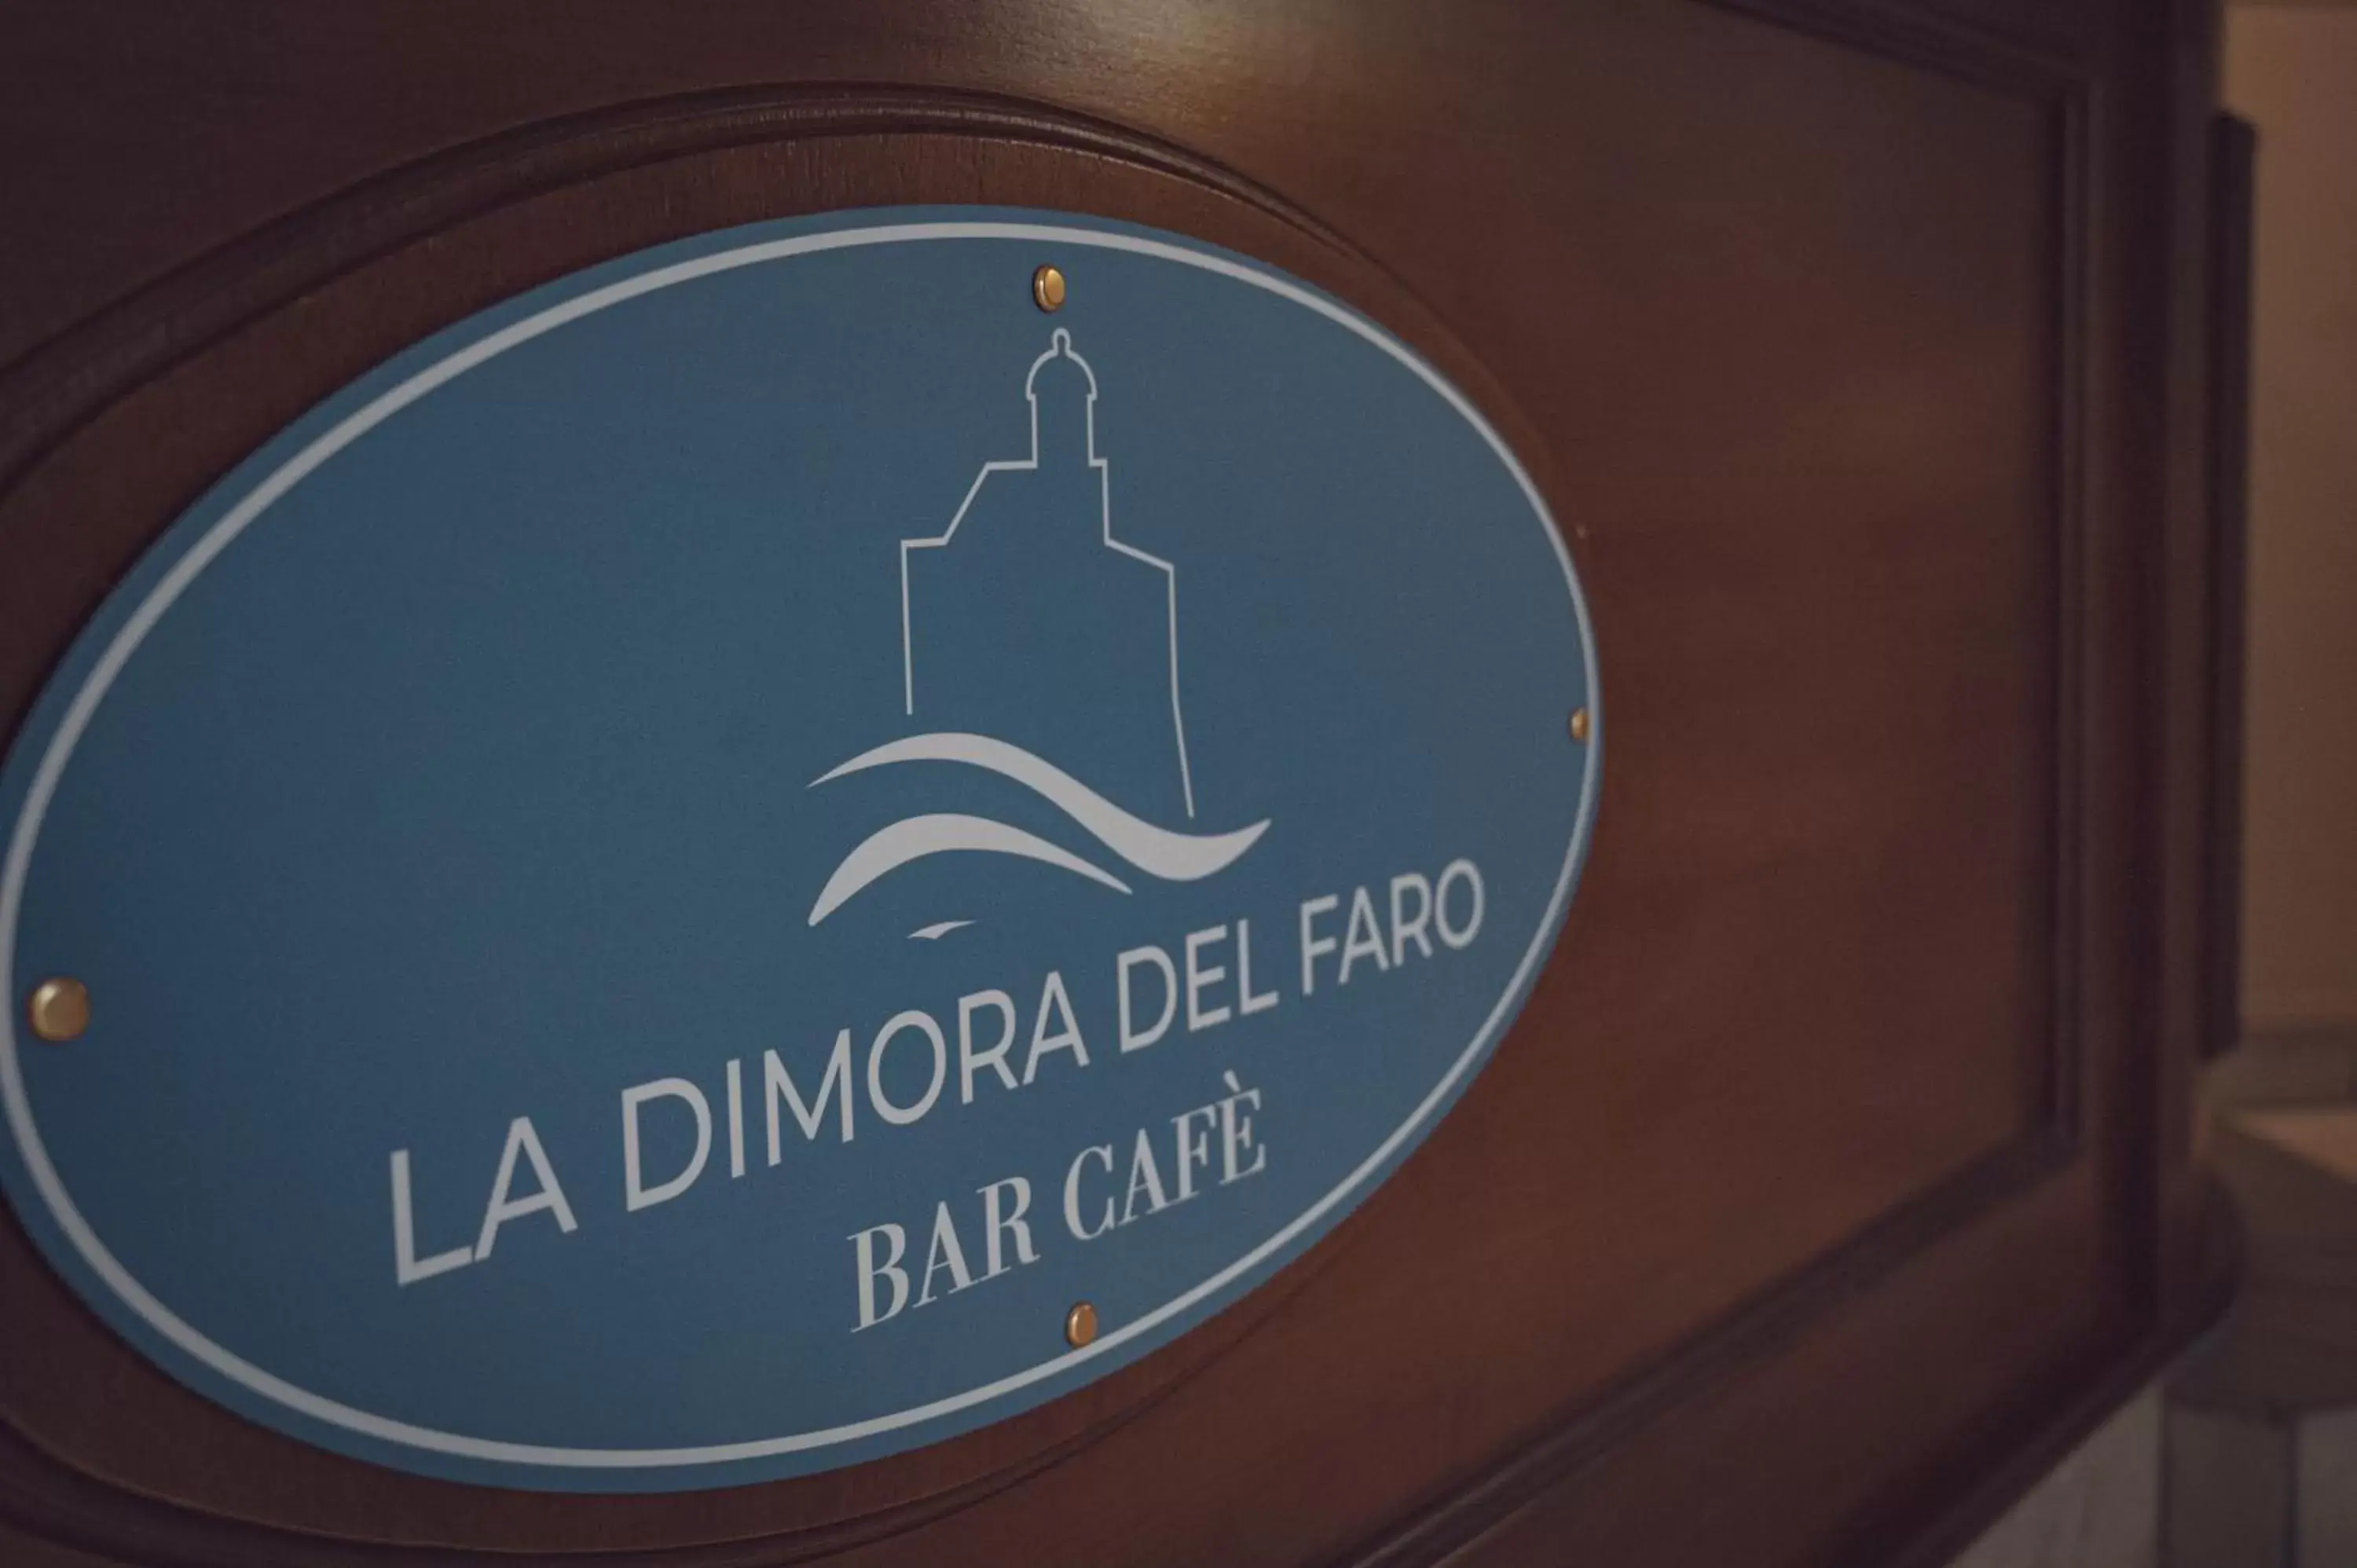 Property logo or sign in La Dimora del Faro